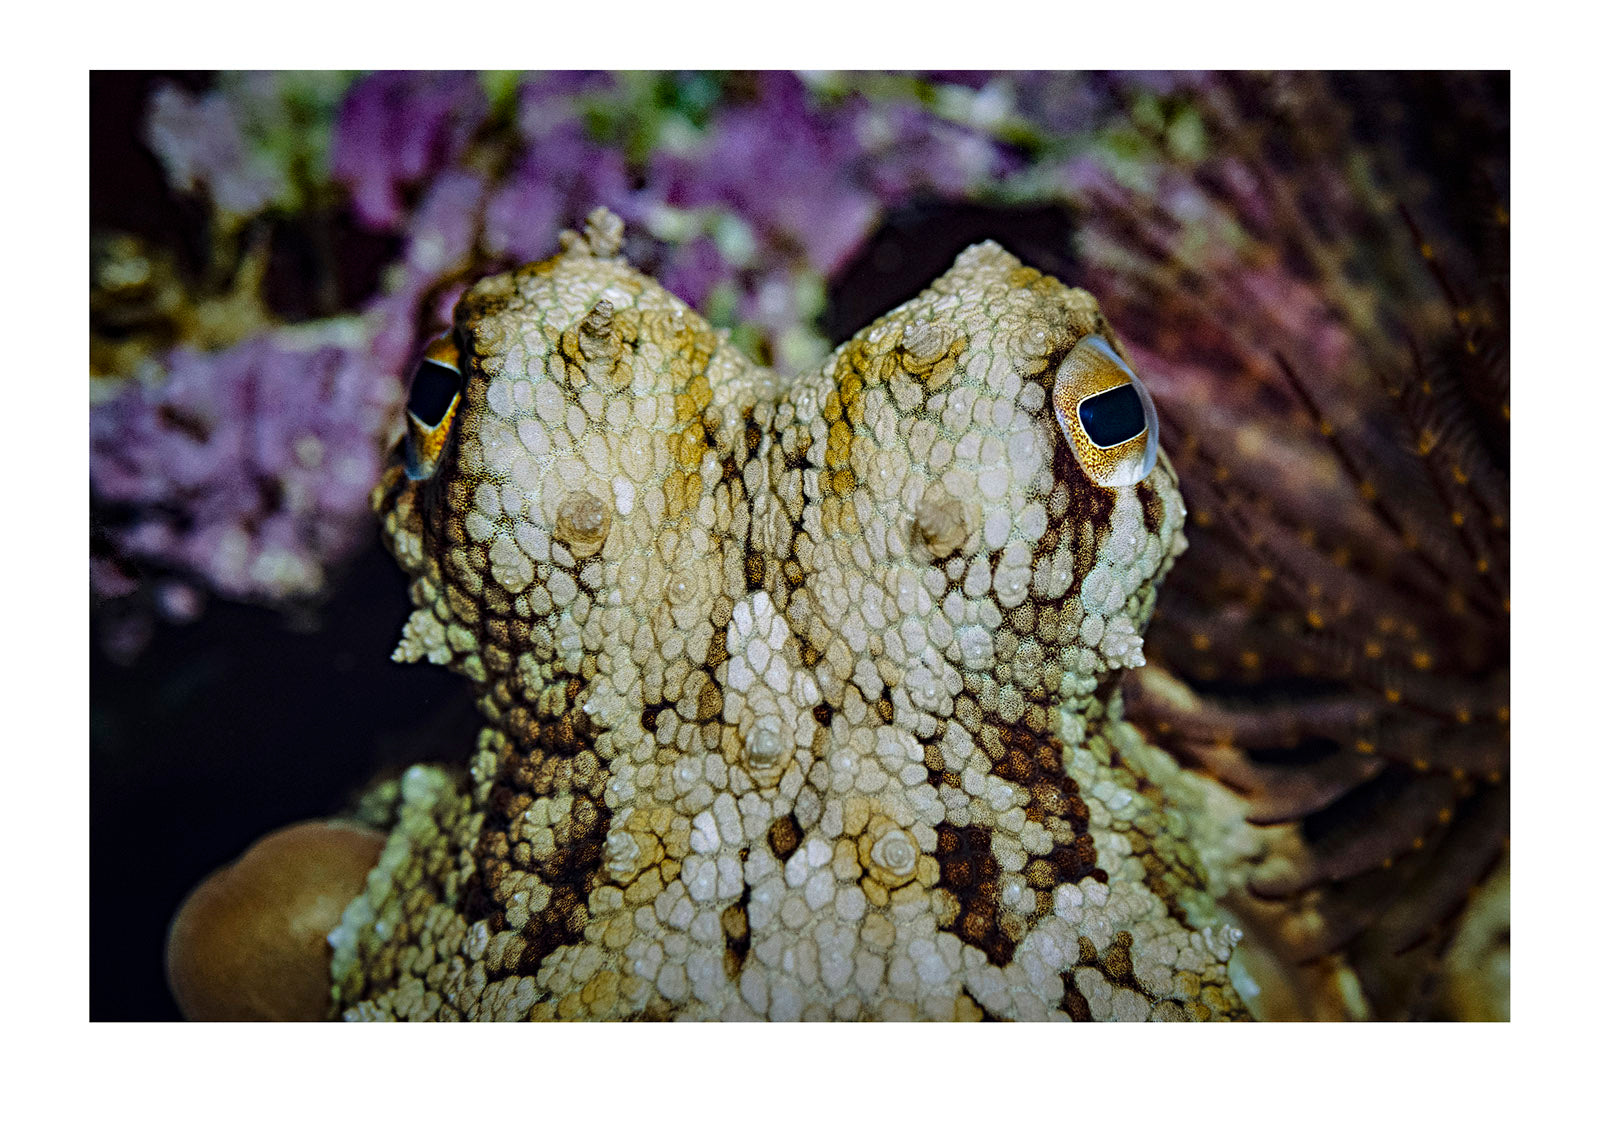 Closeup of octopus eyes and head. Melbourne Aquarium, Victoria, Australia.